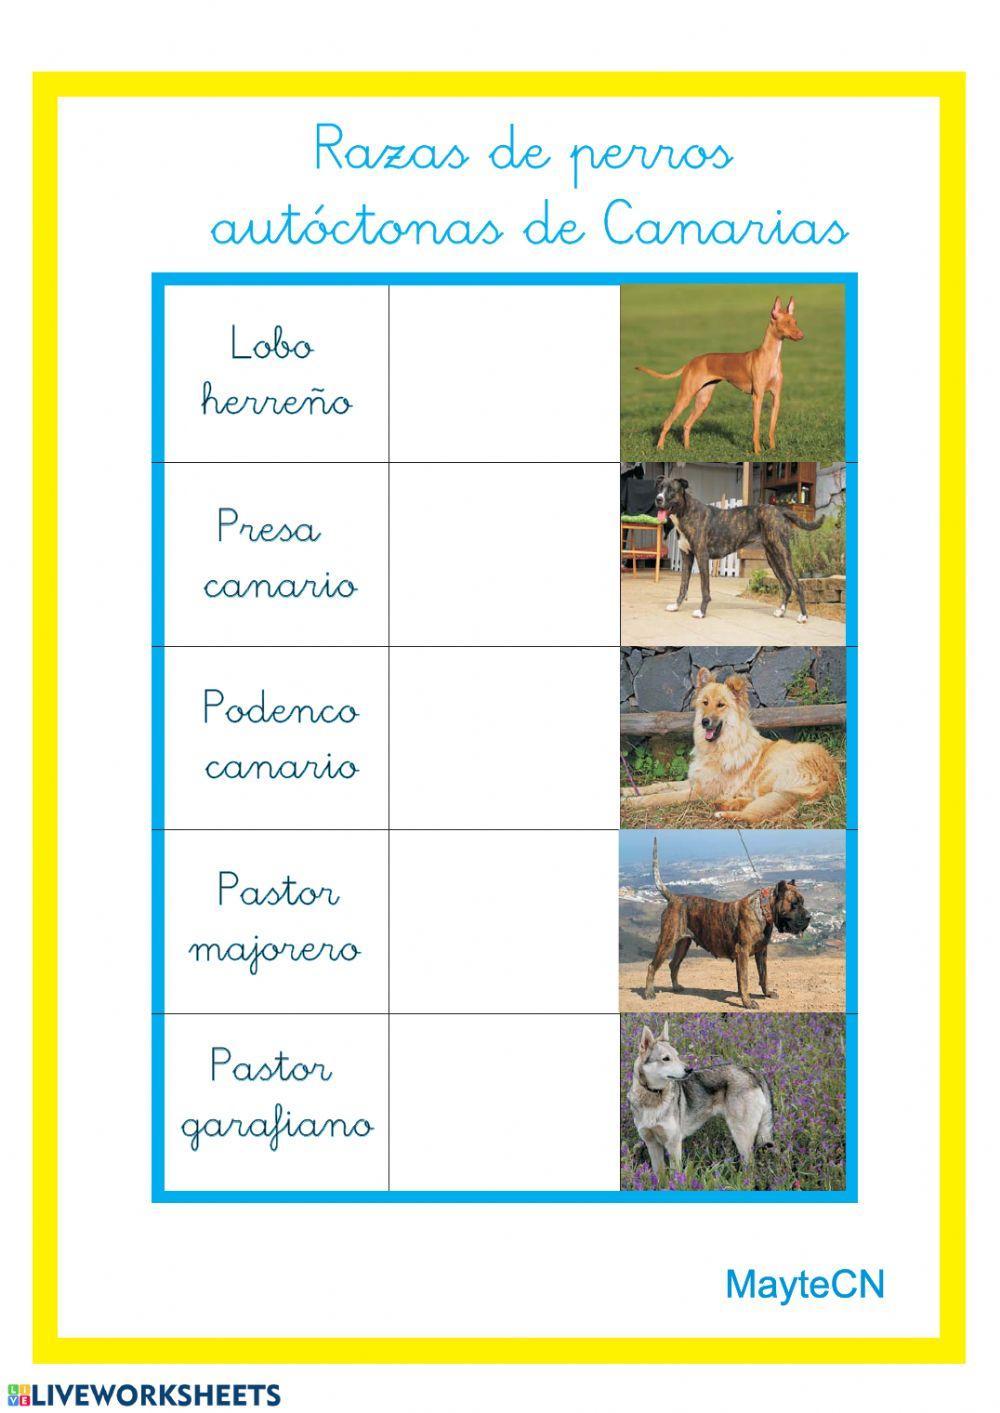 Razas de perros autóctonas de Canarias